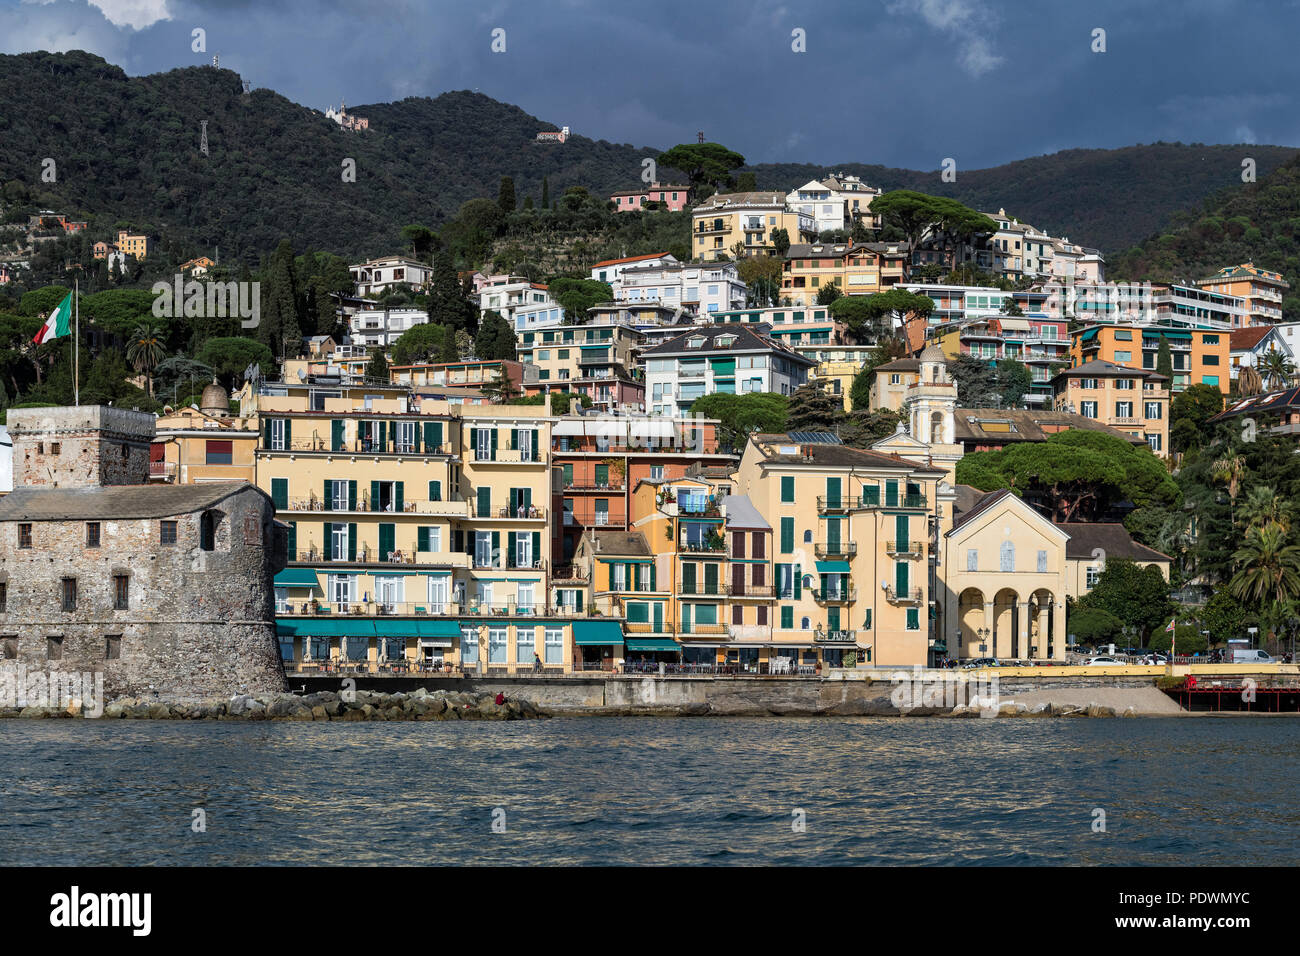 Encantador pueblo costero, Santa Margherita, Liguria, Italia Foto de stock